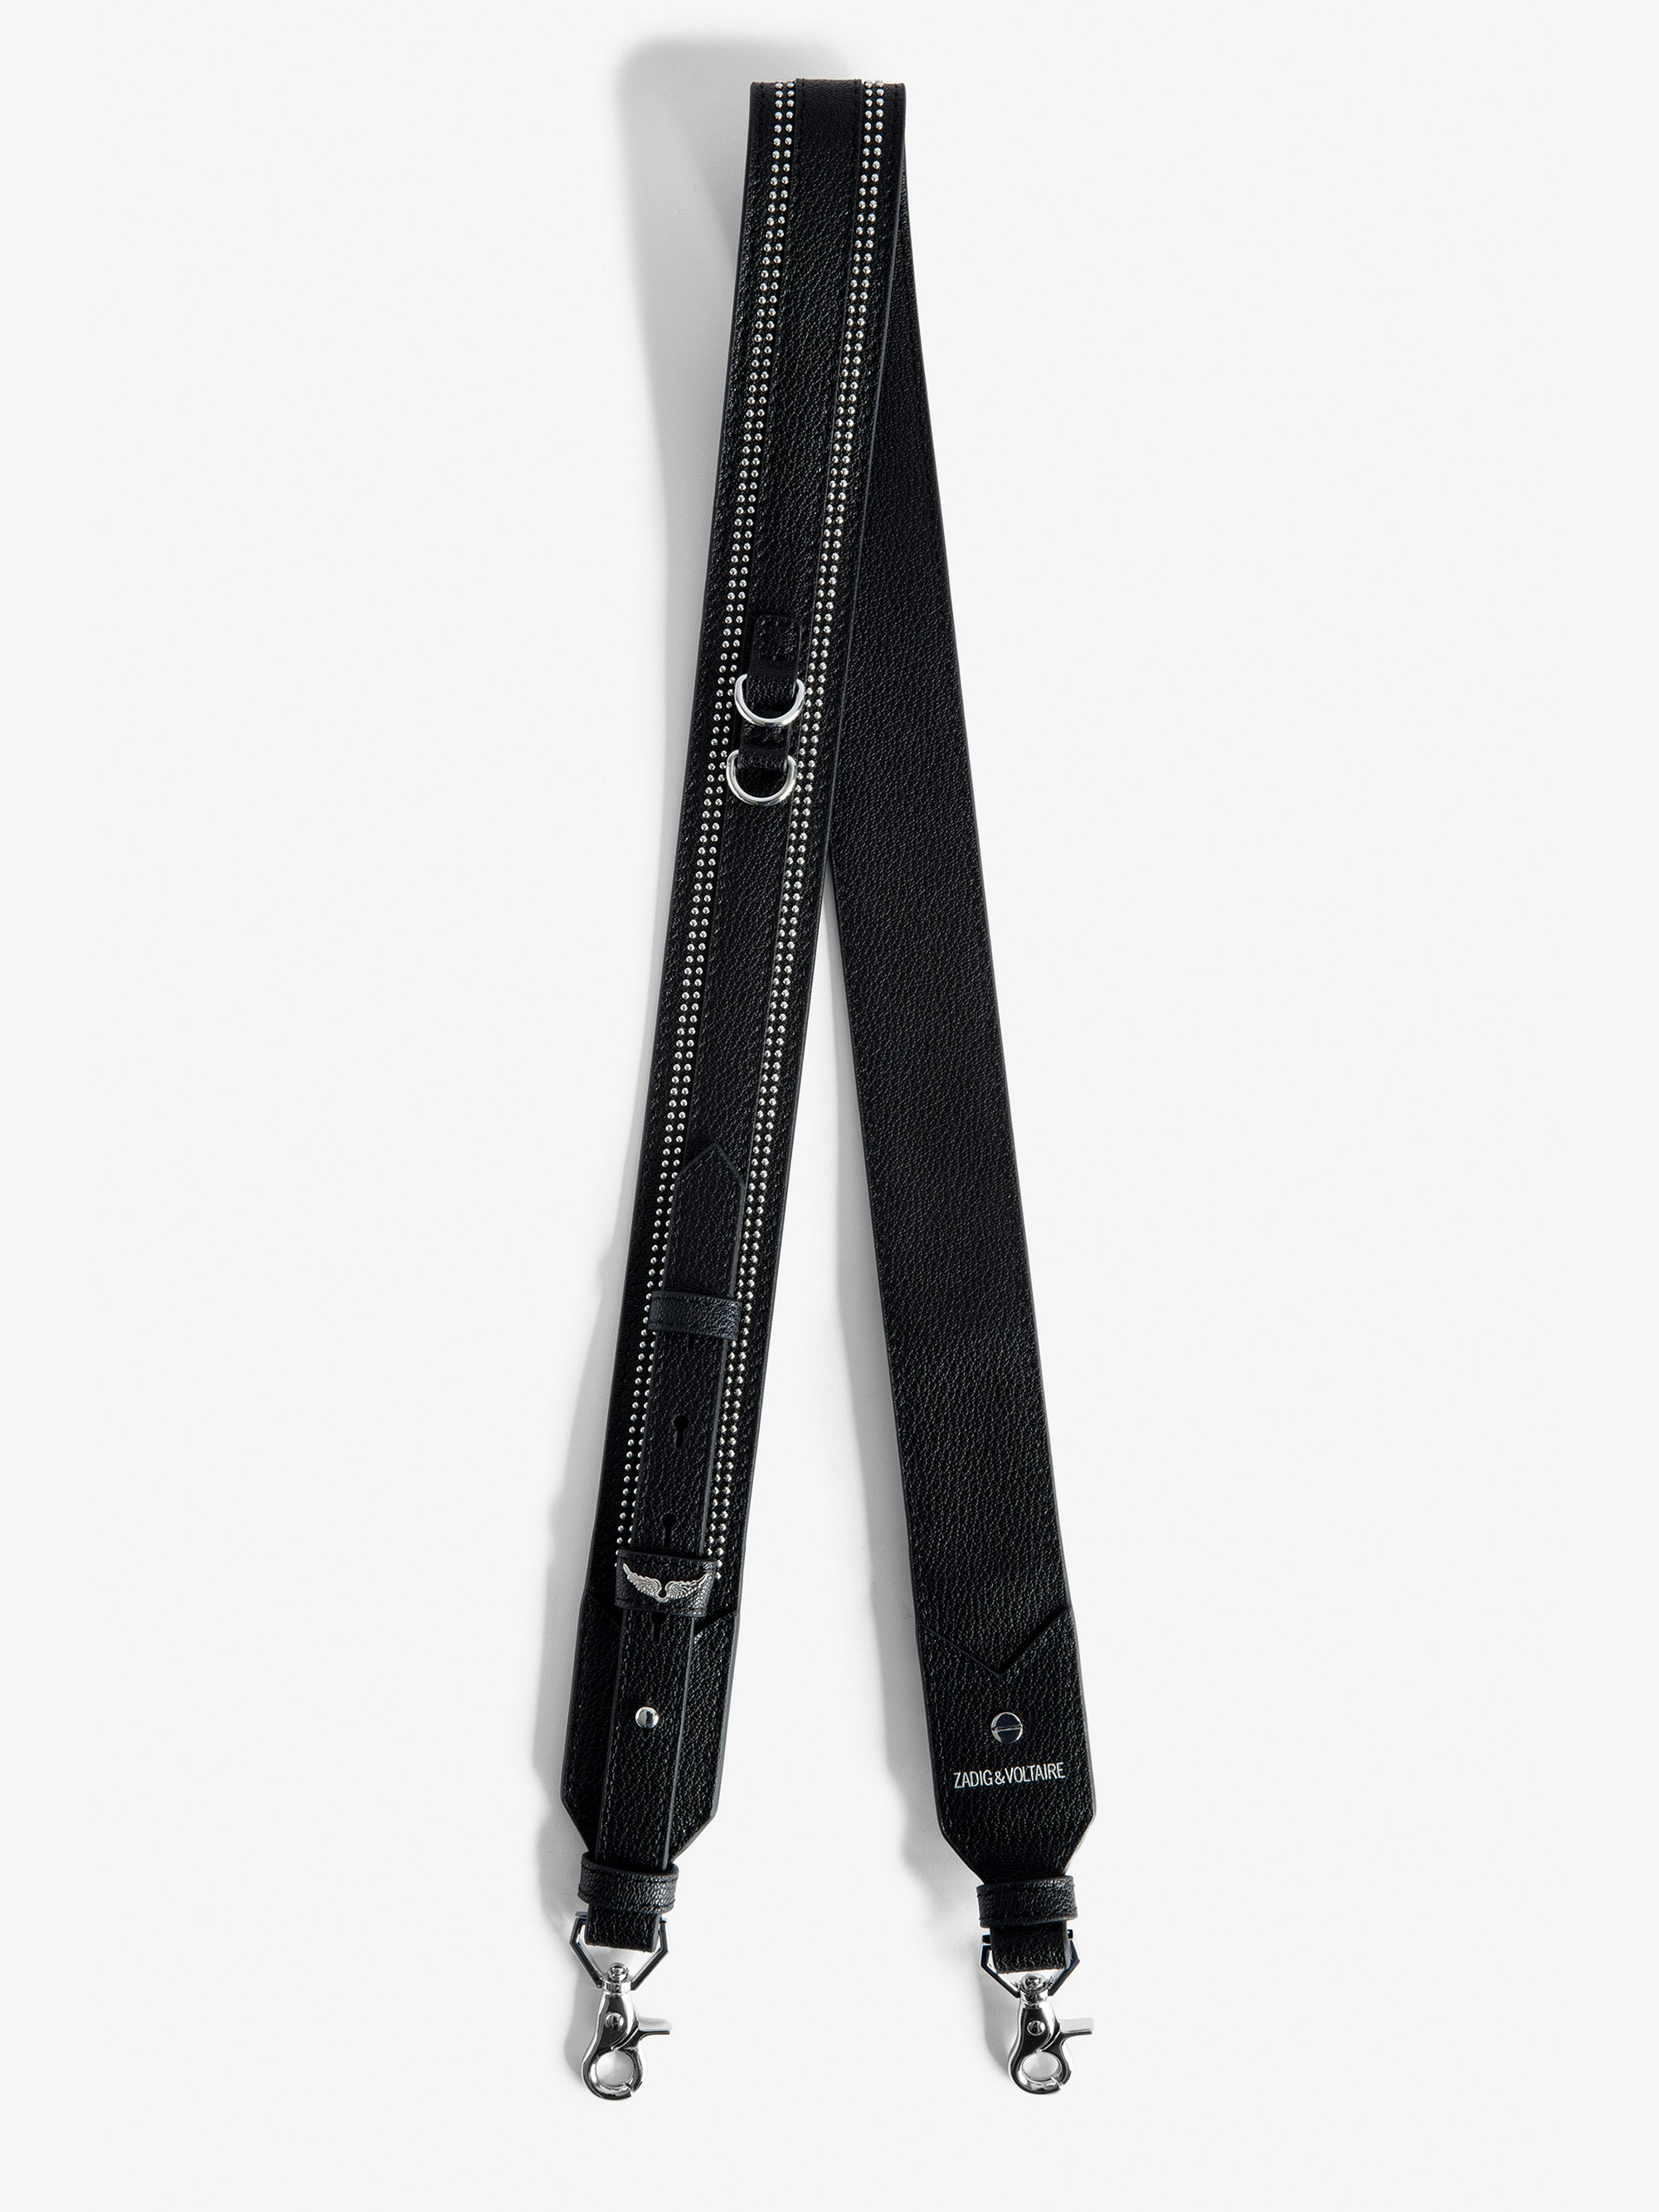 Verstellbarer Schulterriemen - Verstellbarer Schulterriemen aus schwarzem, genarbtem Leder mit Nietenbesatz für Damen.